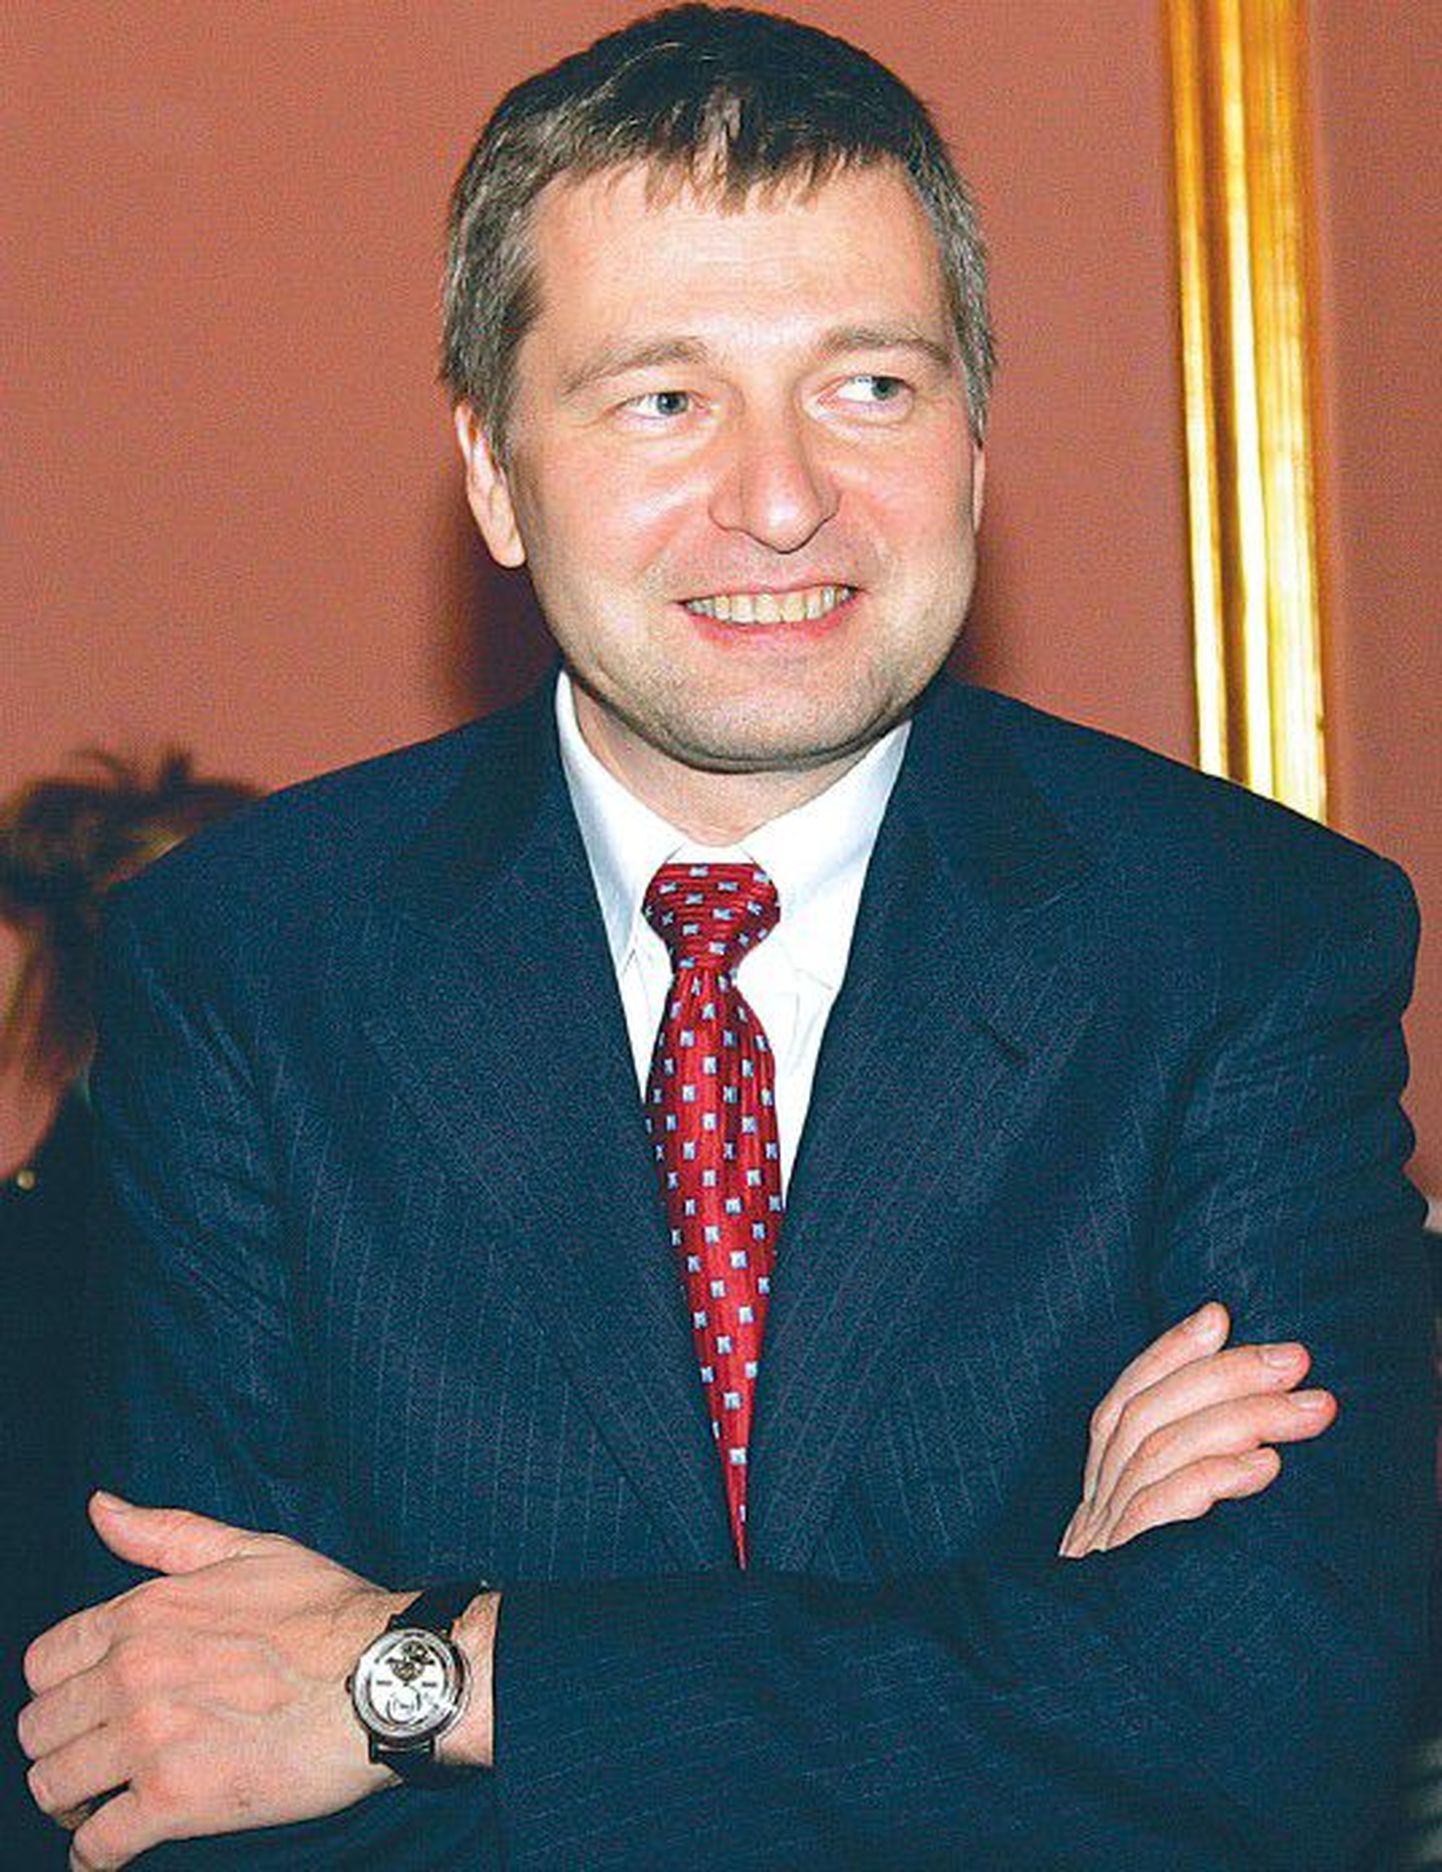 Мультимиллиардер Дмитий Рыболовлев (45) получил большую часть своего состояния в 2010 году за счет продажи своих акций предприятия по производству удобрений «Уралкал».